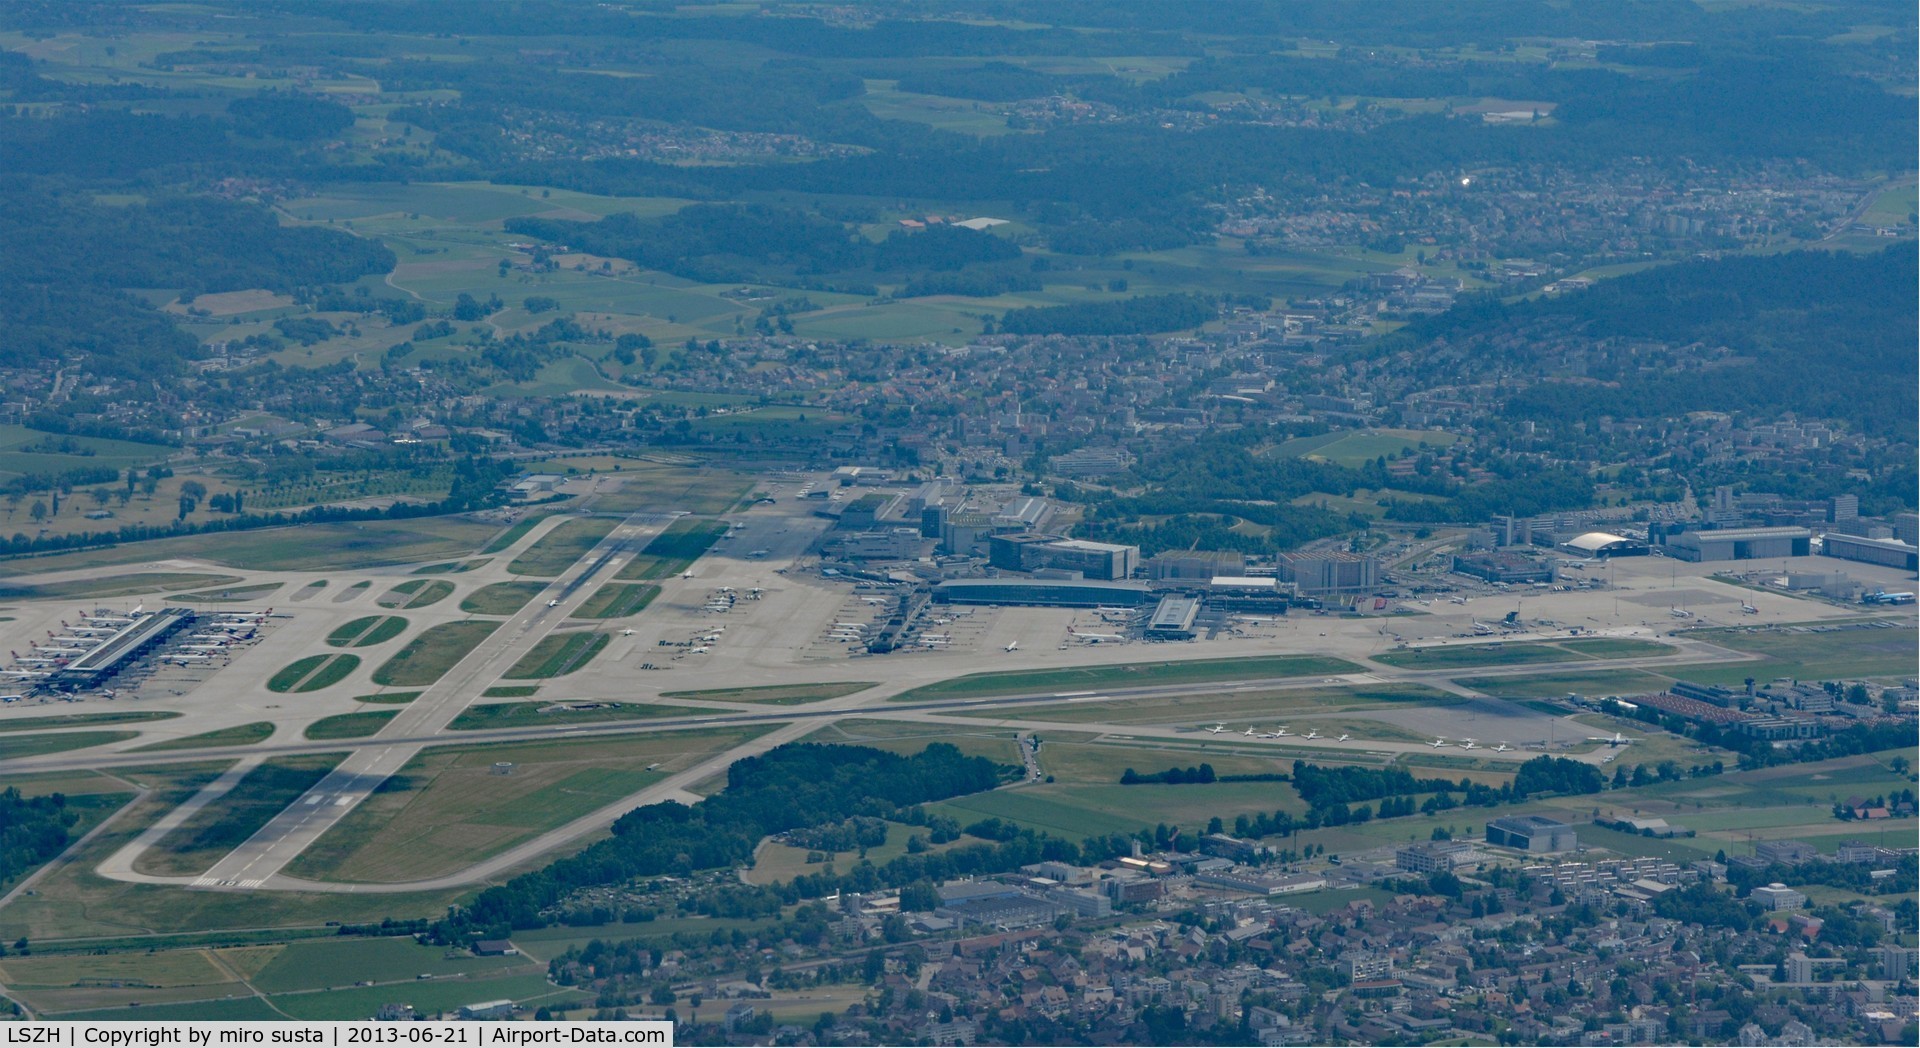 Zurich International Airport, Zurich Switzerland (LSZH) - Zurich-Kloten International Airport, Switzerland